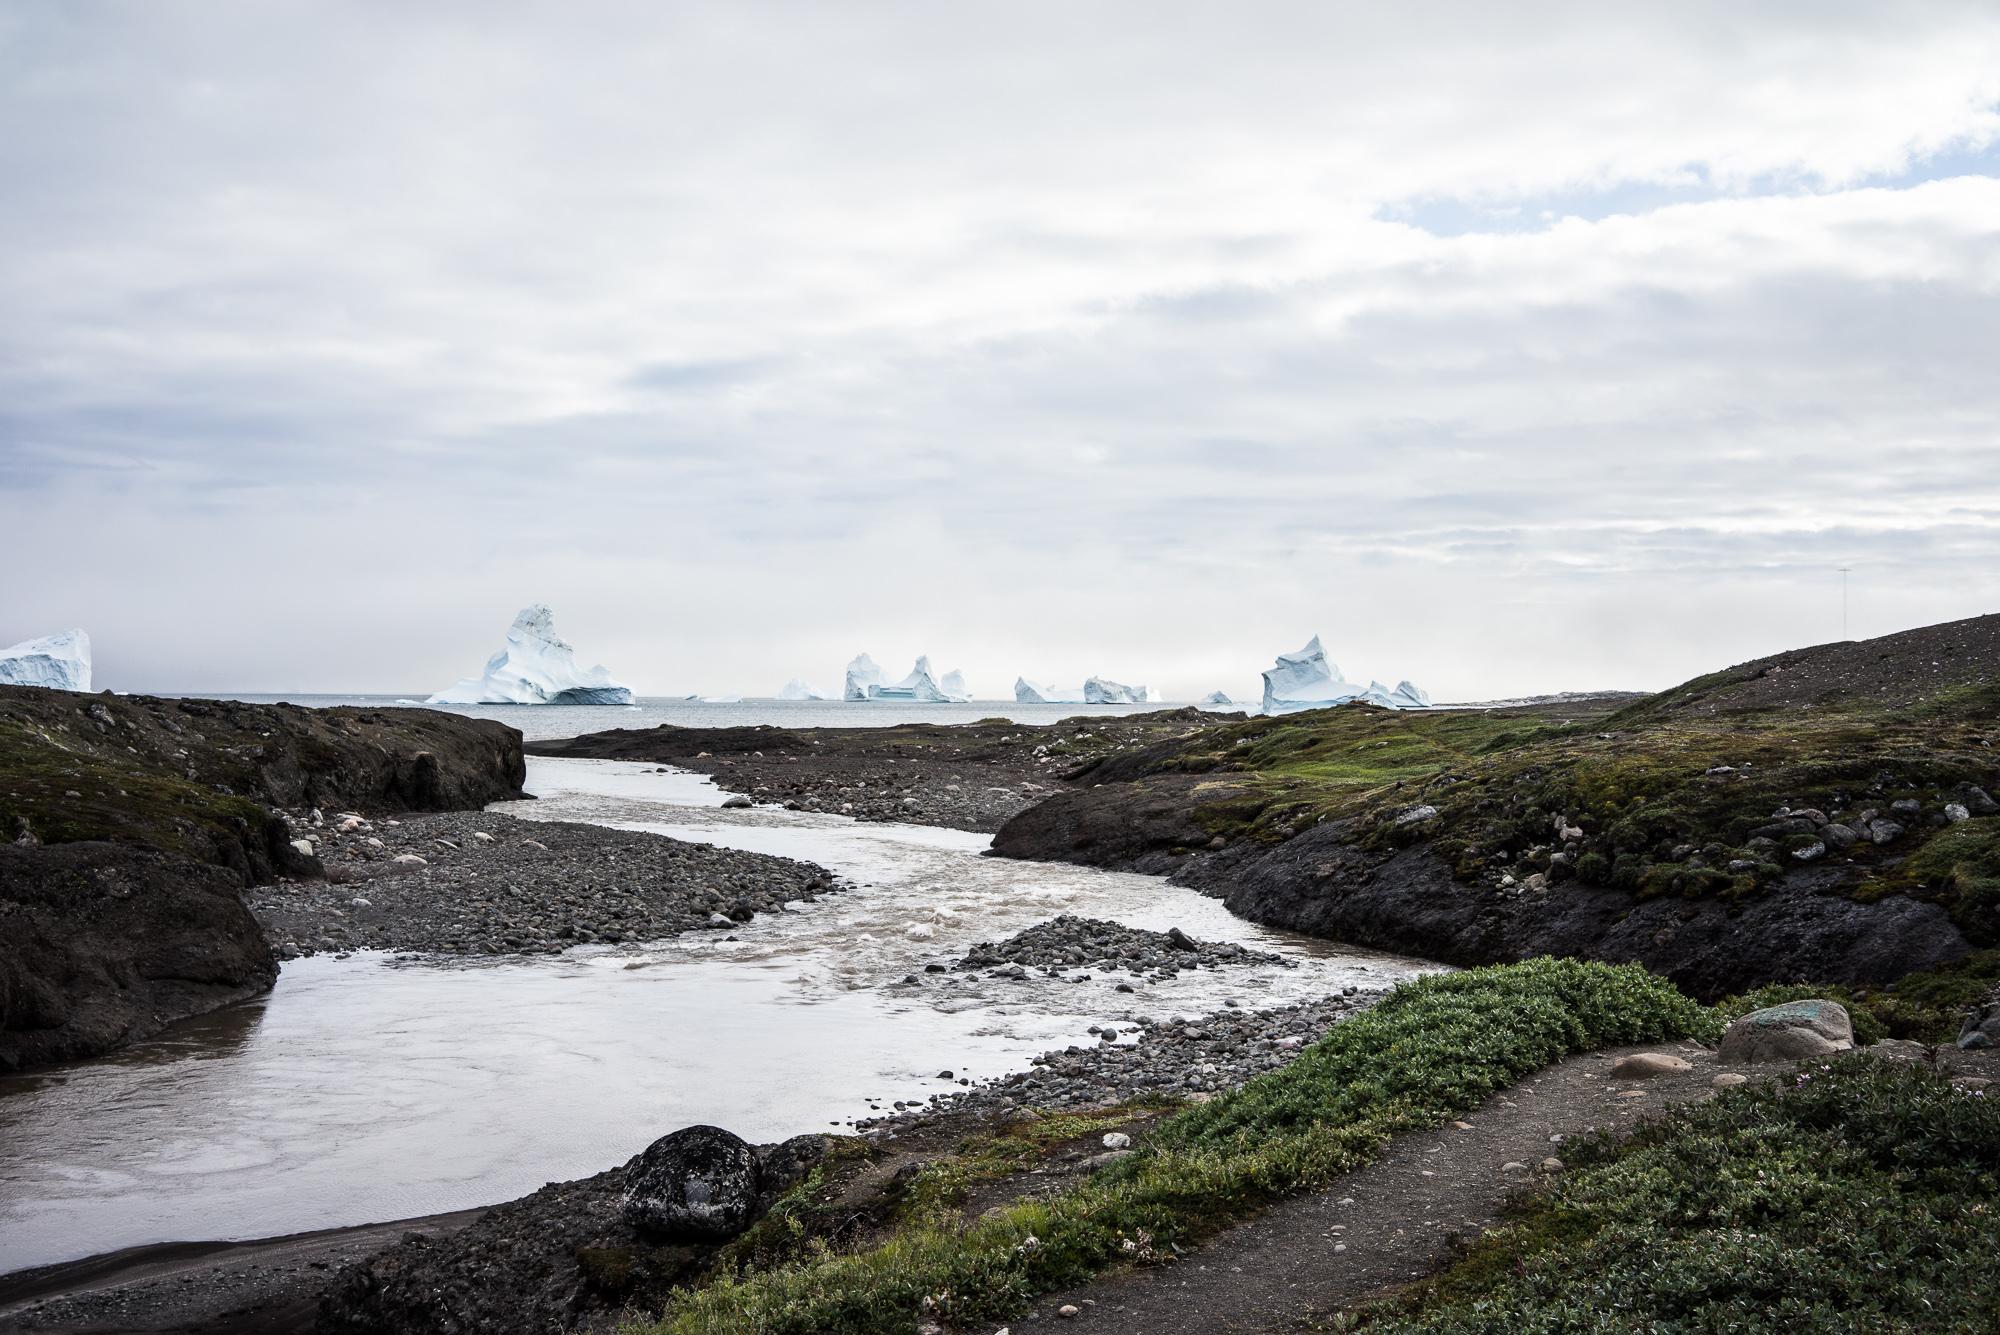 Moins nombreux et de dimension plus modestes qu’à Ilulissat, les icebergs au large de l’île de Disko contribuent néamoins à des vues très pittoresques. © DB / Yonder